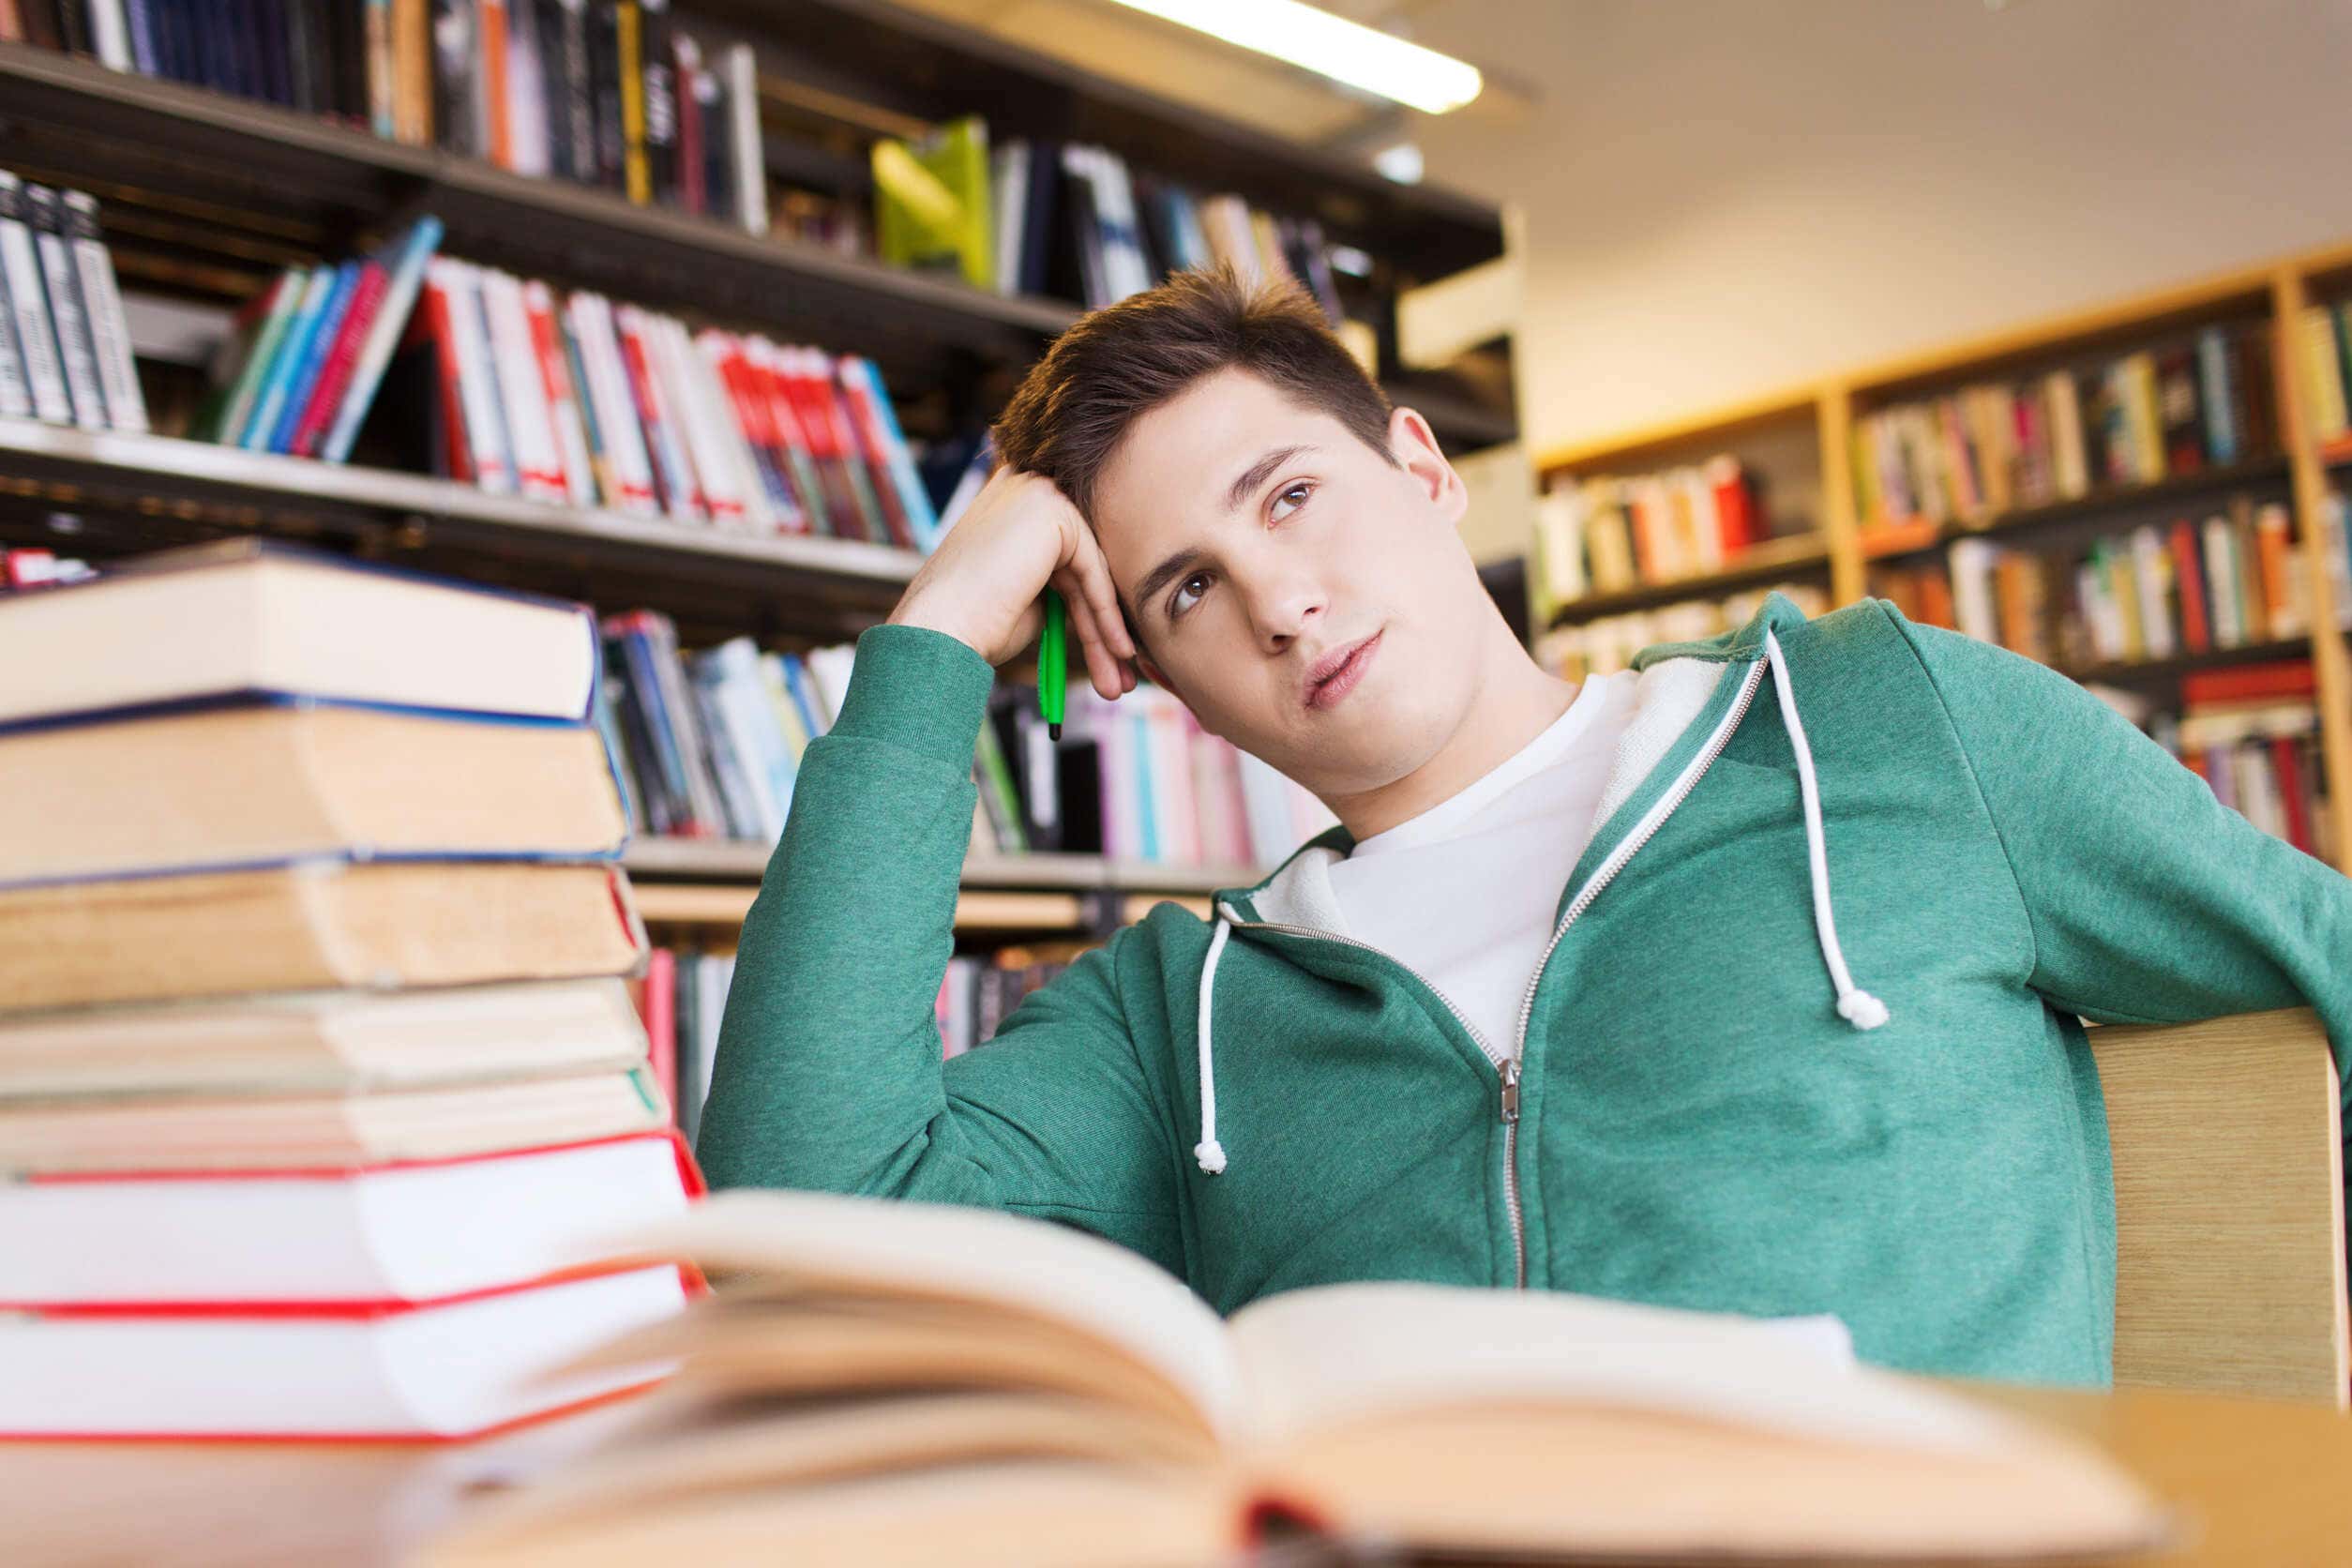 Les conseils pour éviter la somnolence pendant les études comprennent le fait de se lever